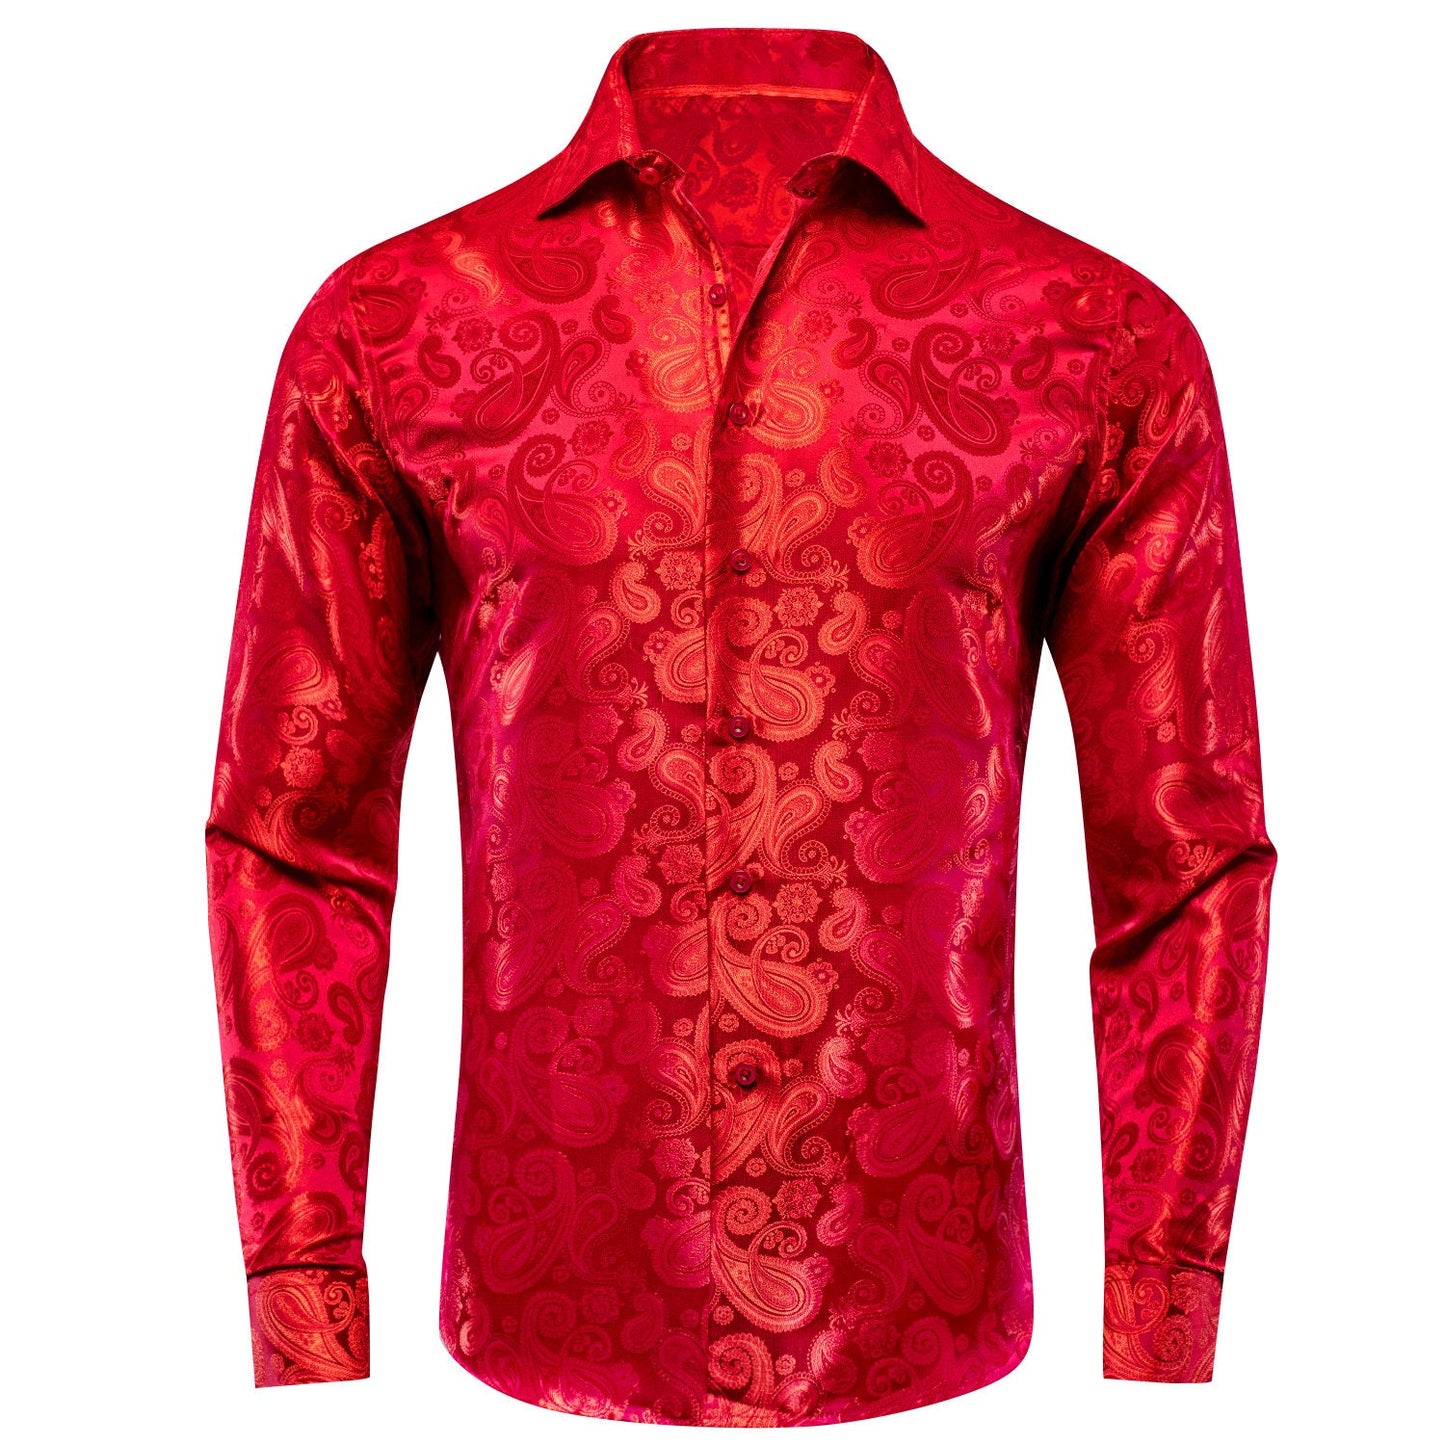 Men's Dress Shirt Long Sleeve Red